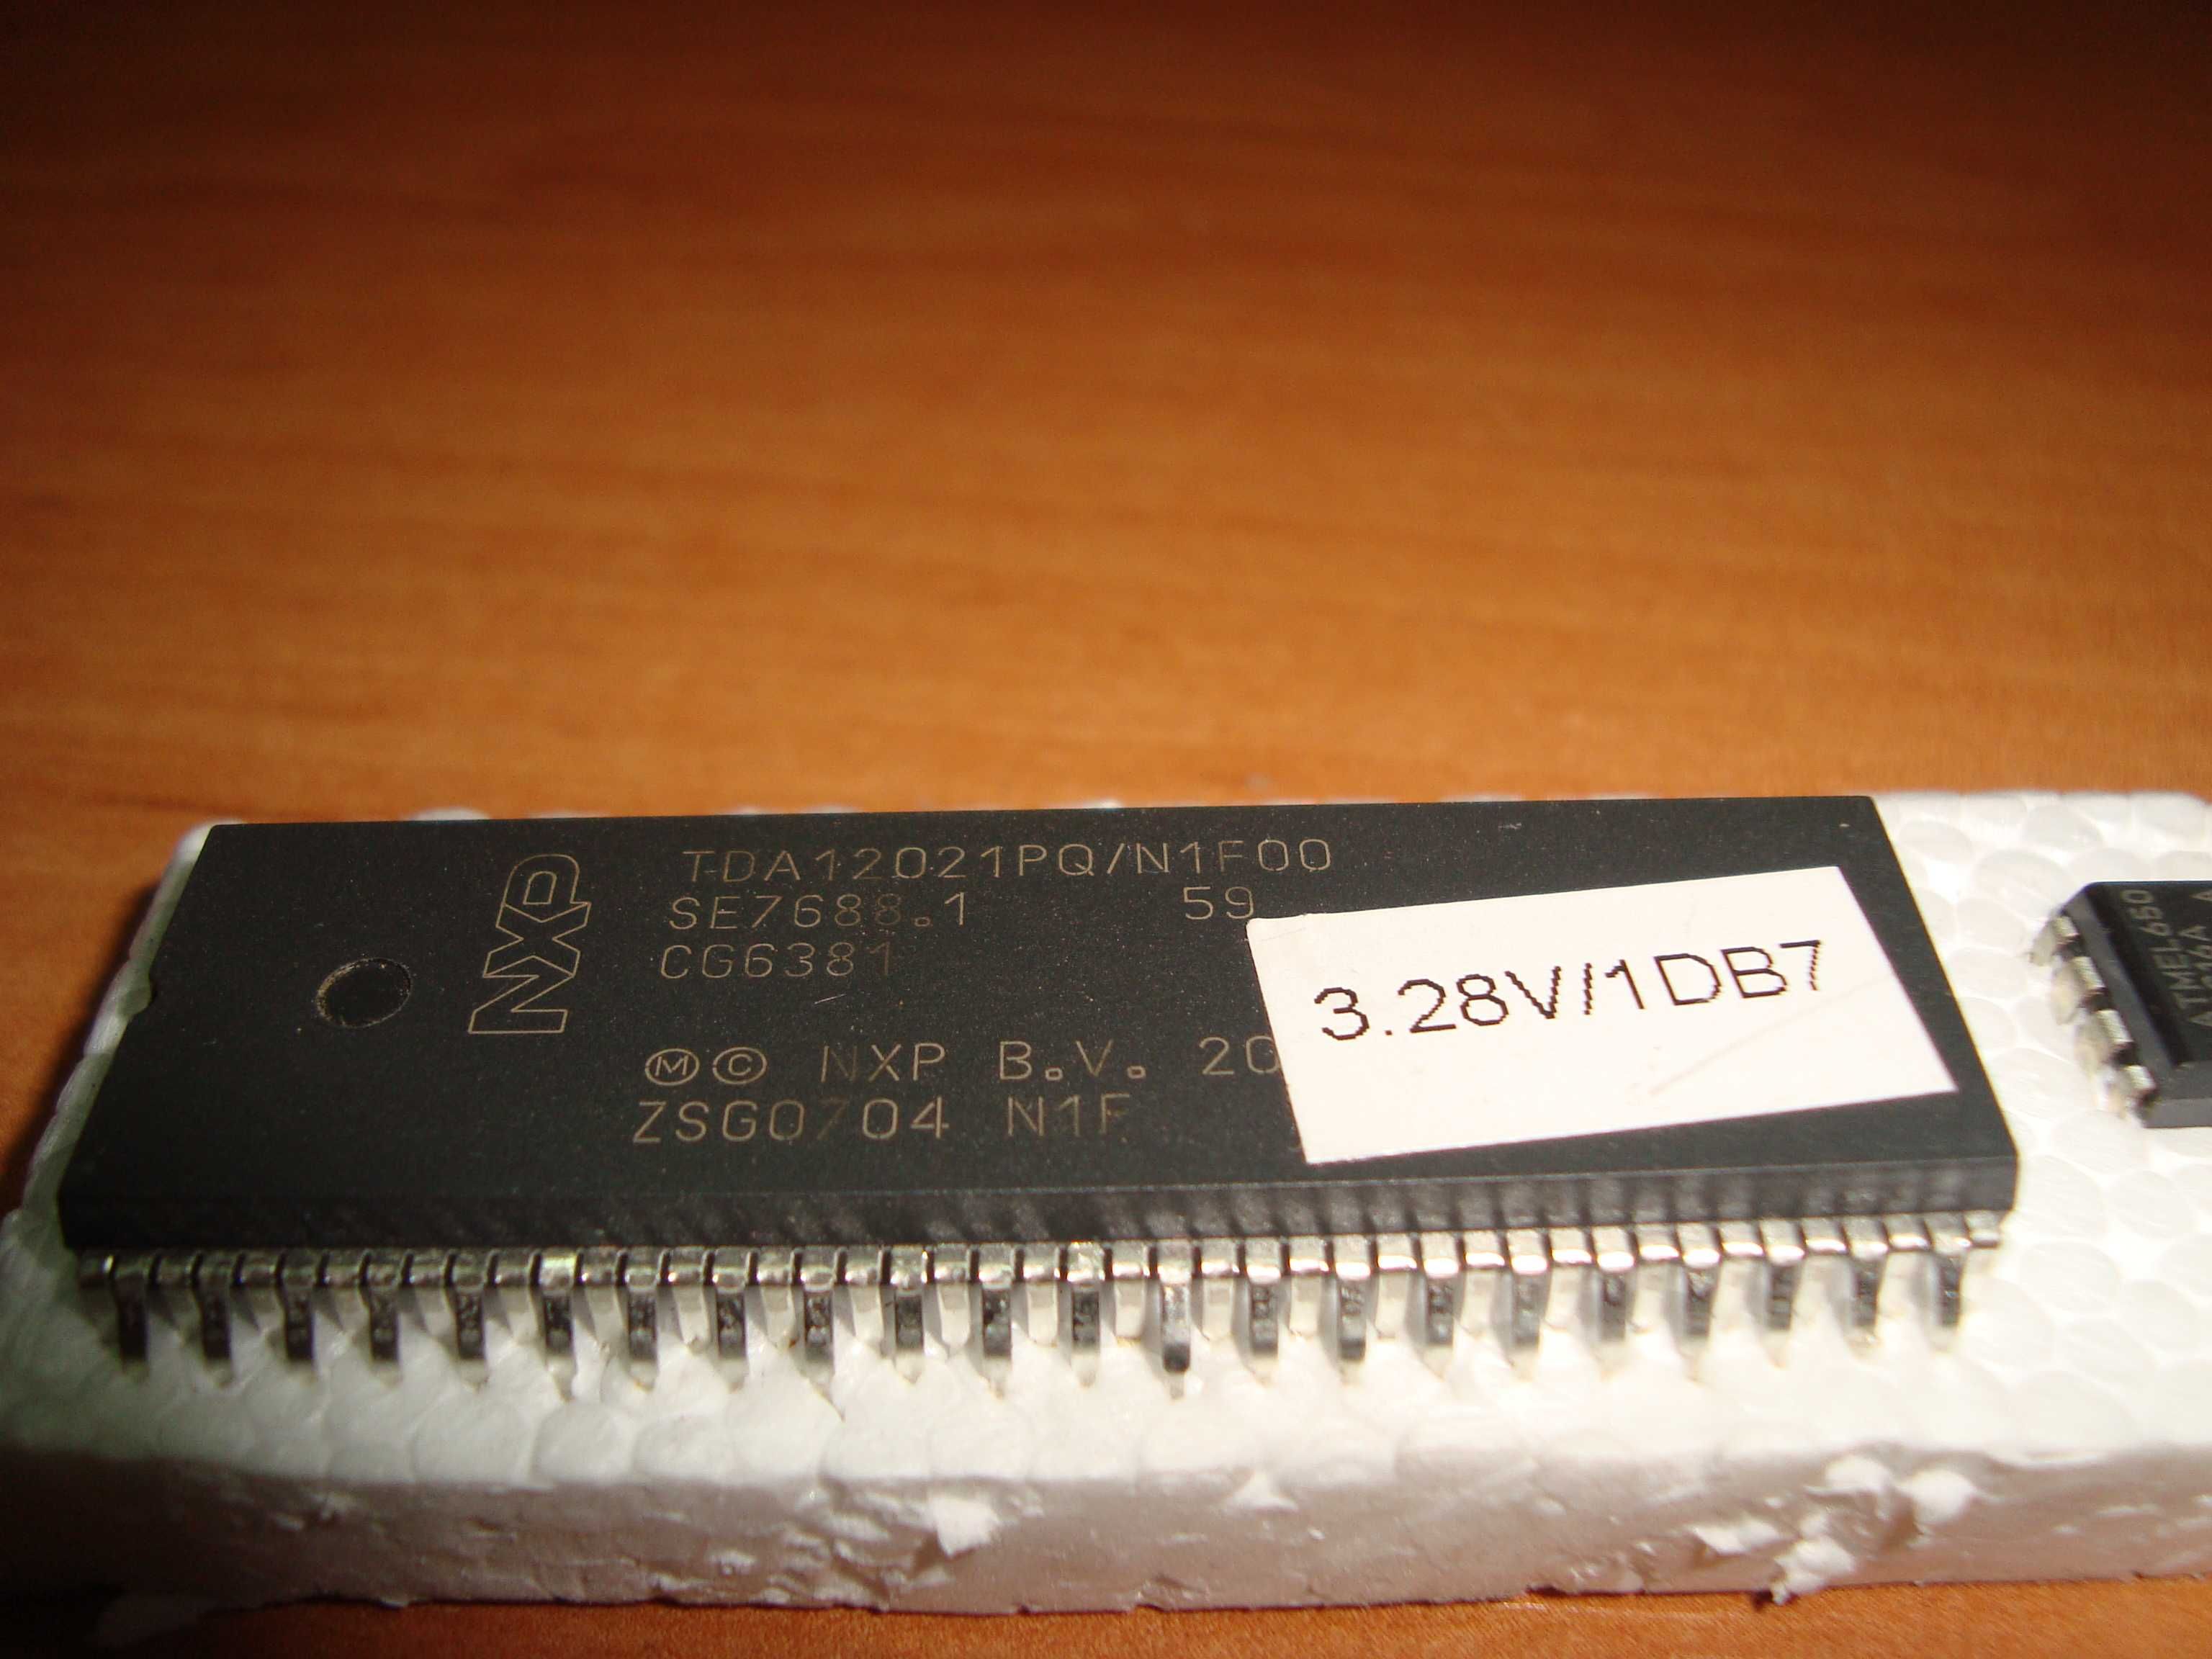 Процессор TDA12020PQ/N1F00 версия 3.28V/1DB7 демонтаж 100% рабочий.